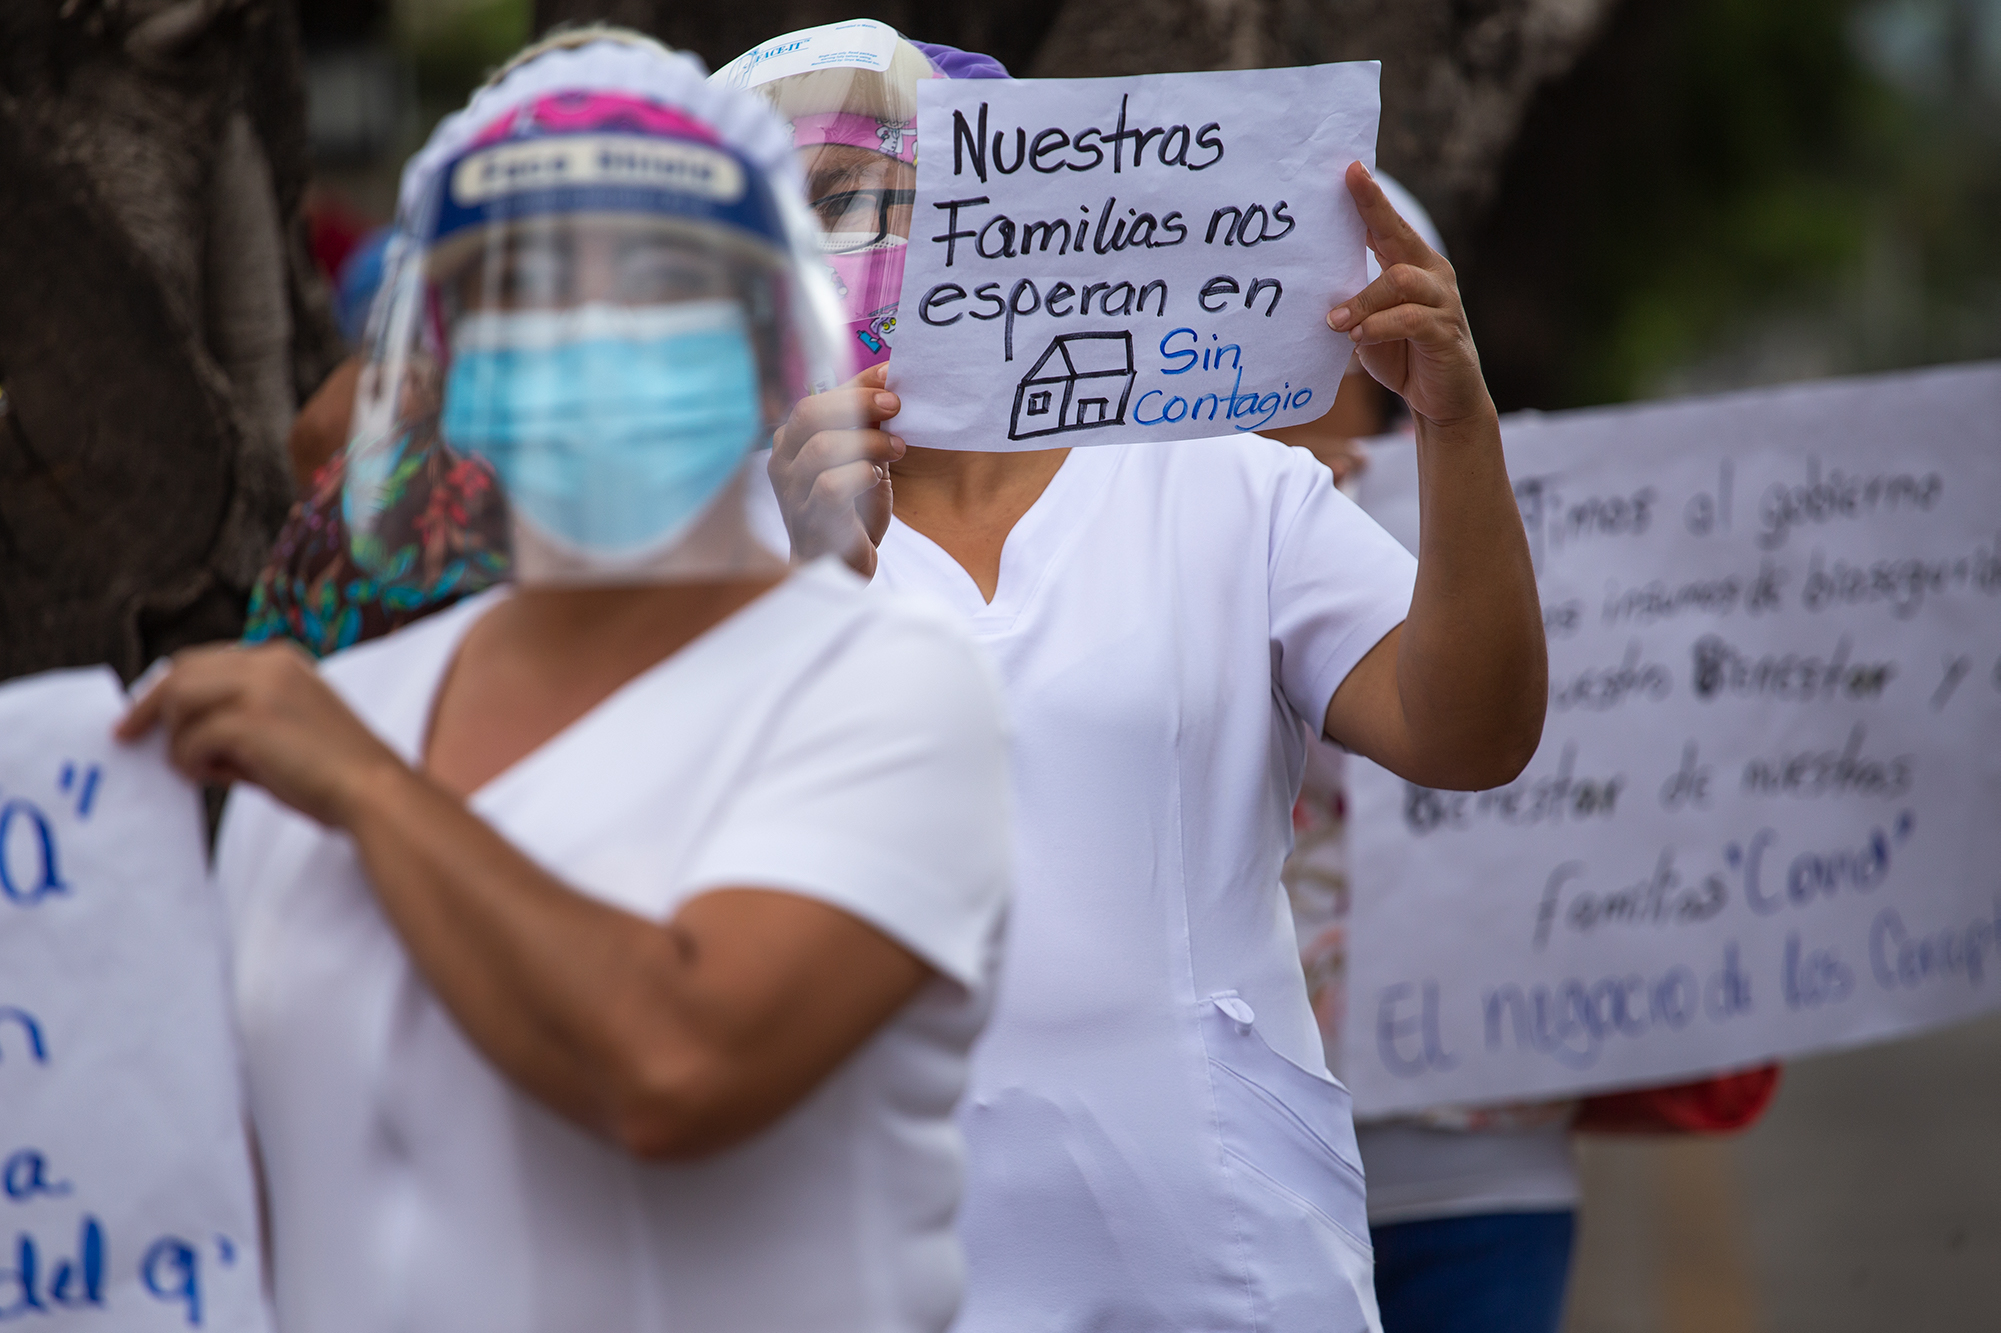 Personal de enfermería del Hospital San Felipe, en la ciudad de Tegucigalpa, realizaron distintas protestas a lo largo del año. Durante la atención médica de la pandemia por COVID-19 el personal médico se ha expuesto al contagio de coronavirus debido a la endeble situación del sistema médico hondureño: salarios bajos, sistema de transporte deficiente para las enfermeras del hospital, y la ausencia total de condiciones dignas en su labor. Miembros del Sindicato de Trabajadores de la Medicina y Similares (Sitramedys) denunciaban que al personal de enfermería del Hospital San Felipe no se les ha garantizado la protección debida para atender la emergencia sanitaria. El caso más extremo es que hasta el mes de junio la administración del hospital pudo garantizar para sus empleados de sala las mascarillas KN95, hasta entonces trabajaron únicamente con mascarillas quirúrgicas. Tegucigalpa, 17 de junio de 2020. Foto: Martín Cálix.